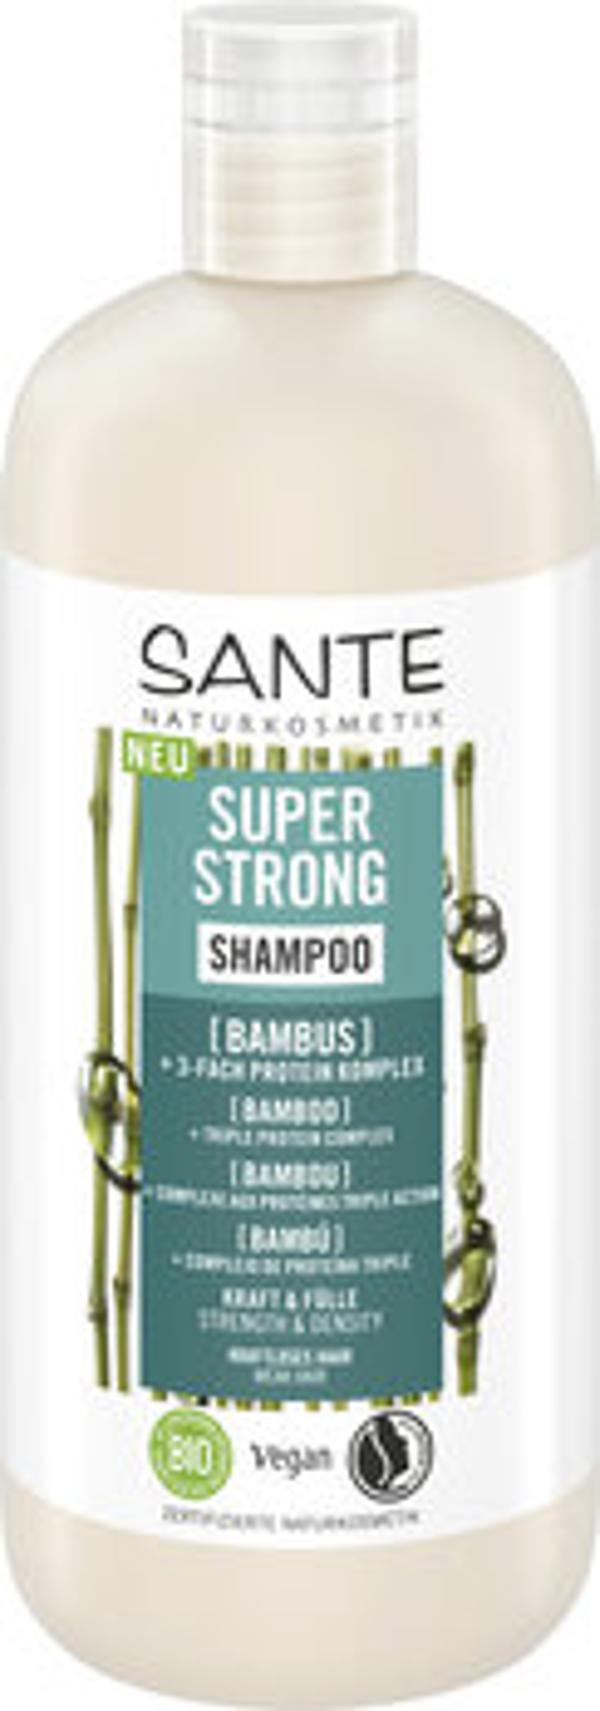 Produktfoto zu Super Strong Shampoo Bambus 500ml